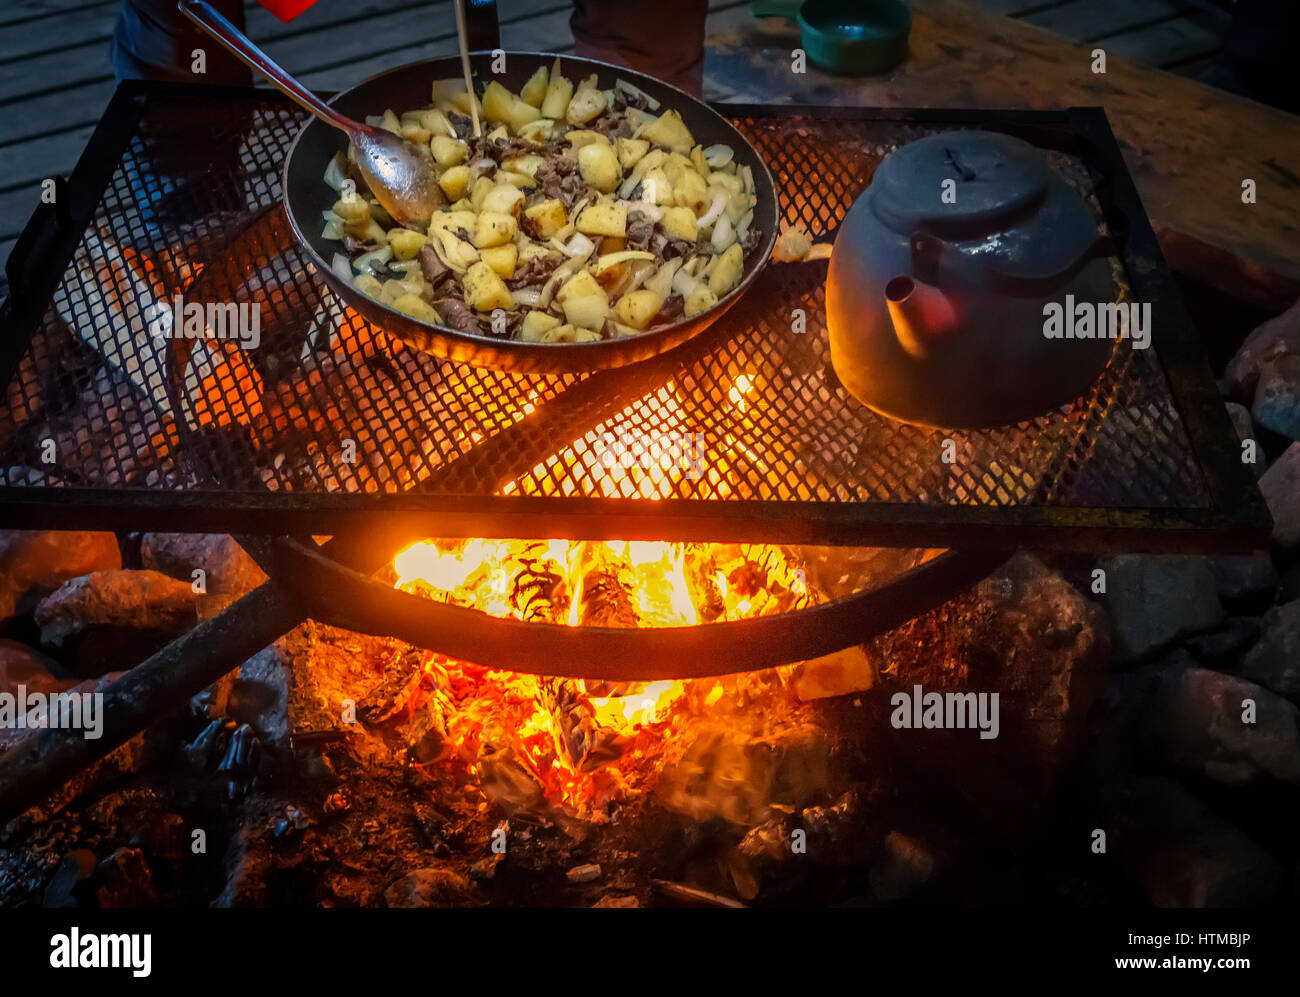 Kochen Fleisch und Kartoffeln auf einer Capmfire, Lappland Schweden Stockfoto